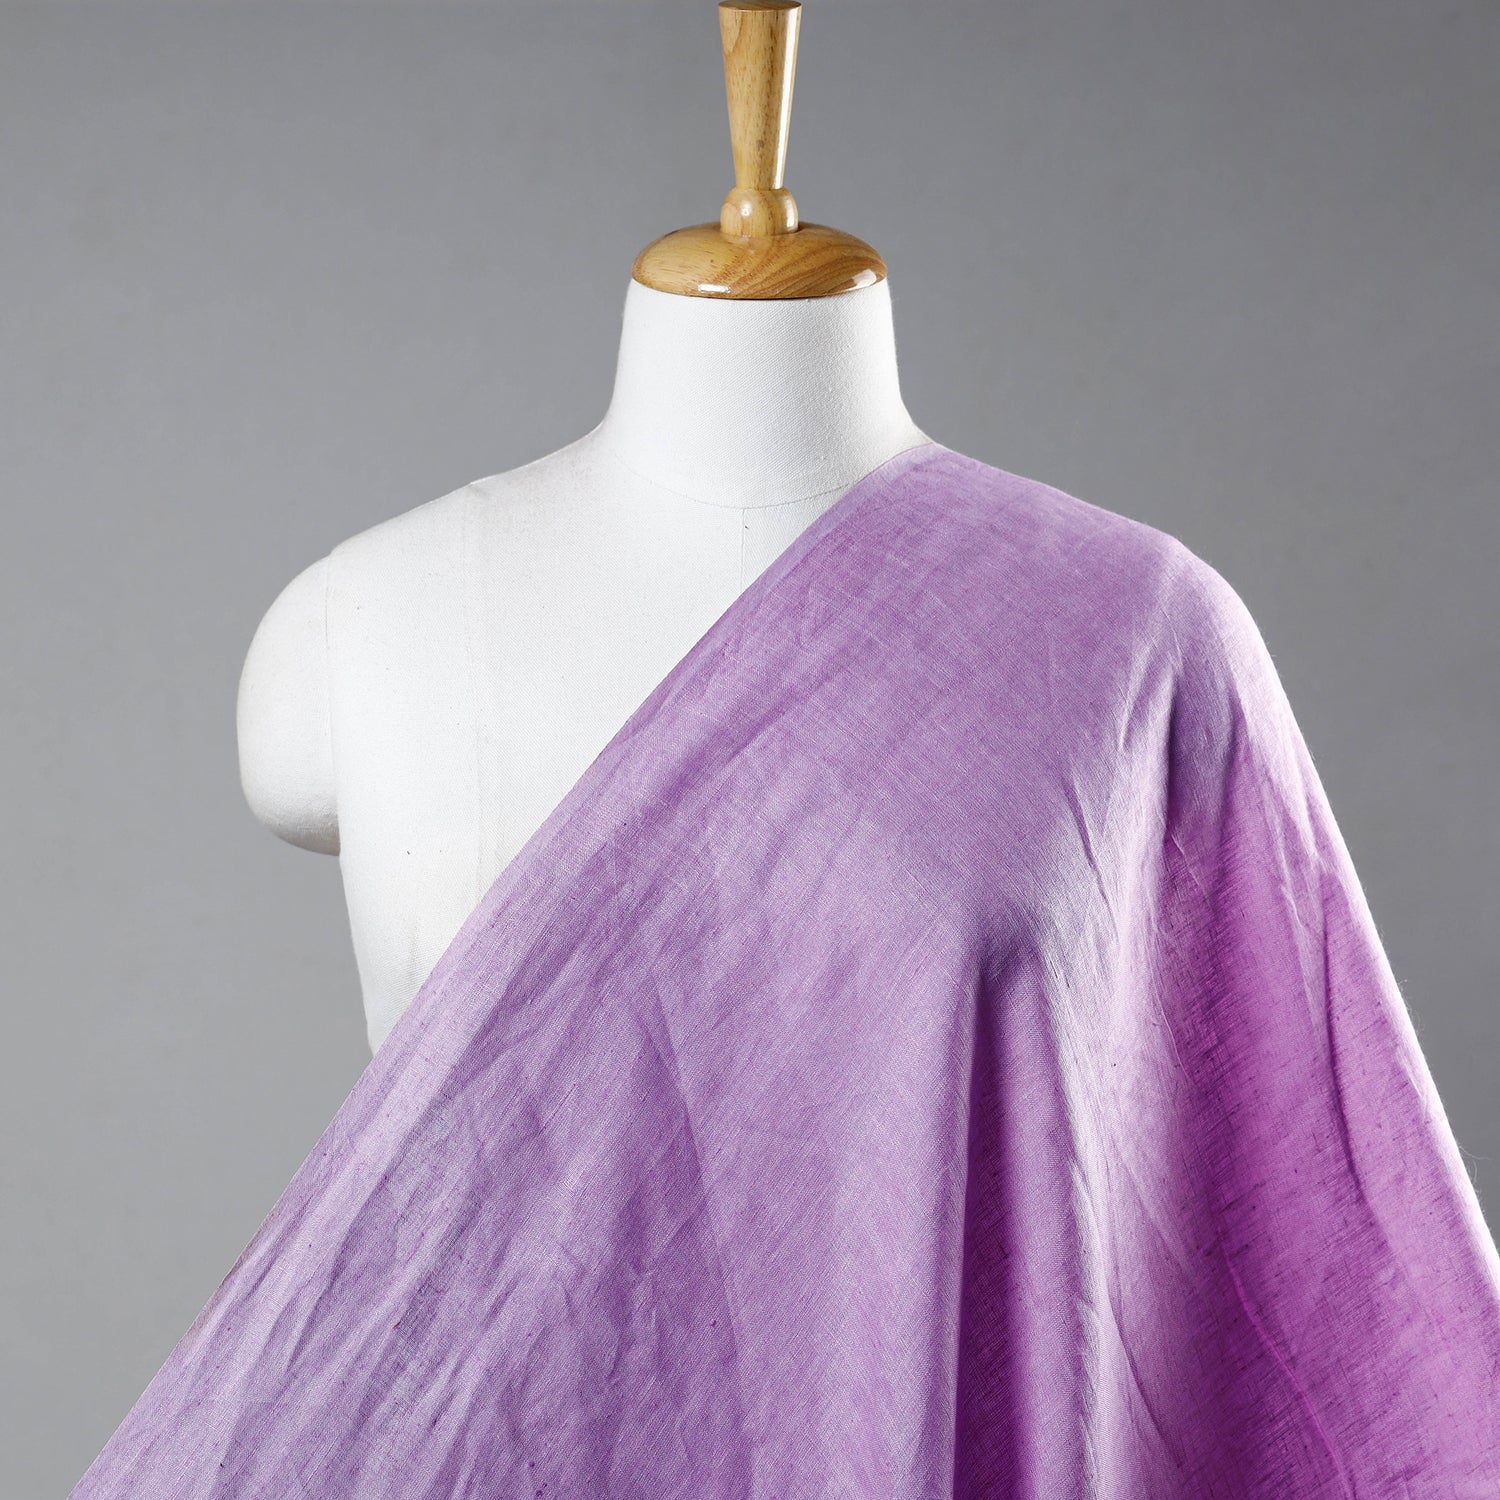 Light Pink - Bhagalpuri Handloom Pure Linen Fabric